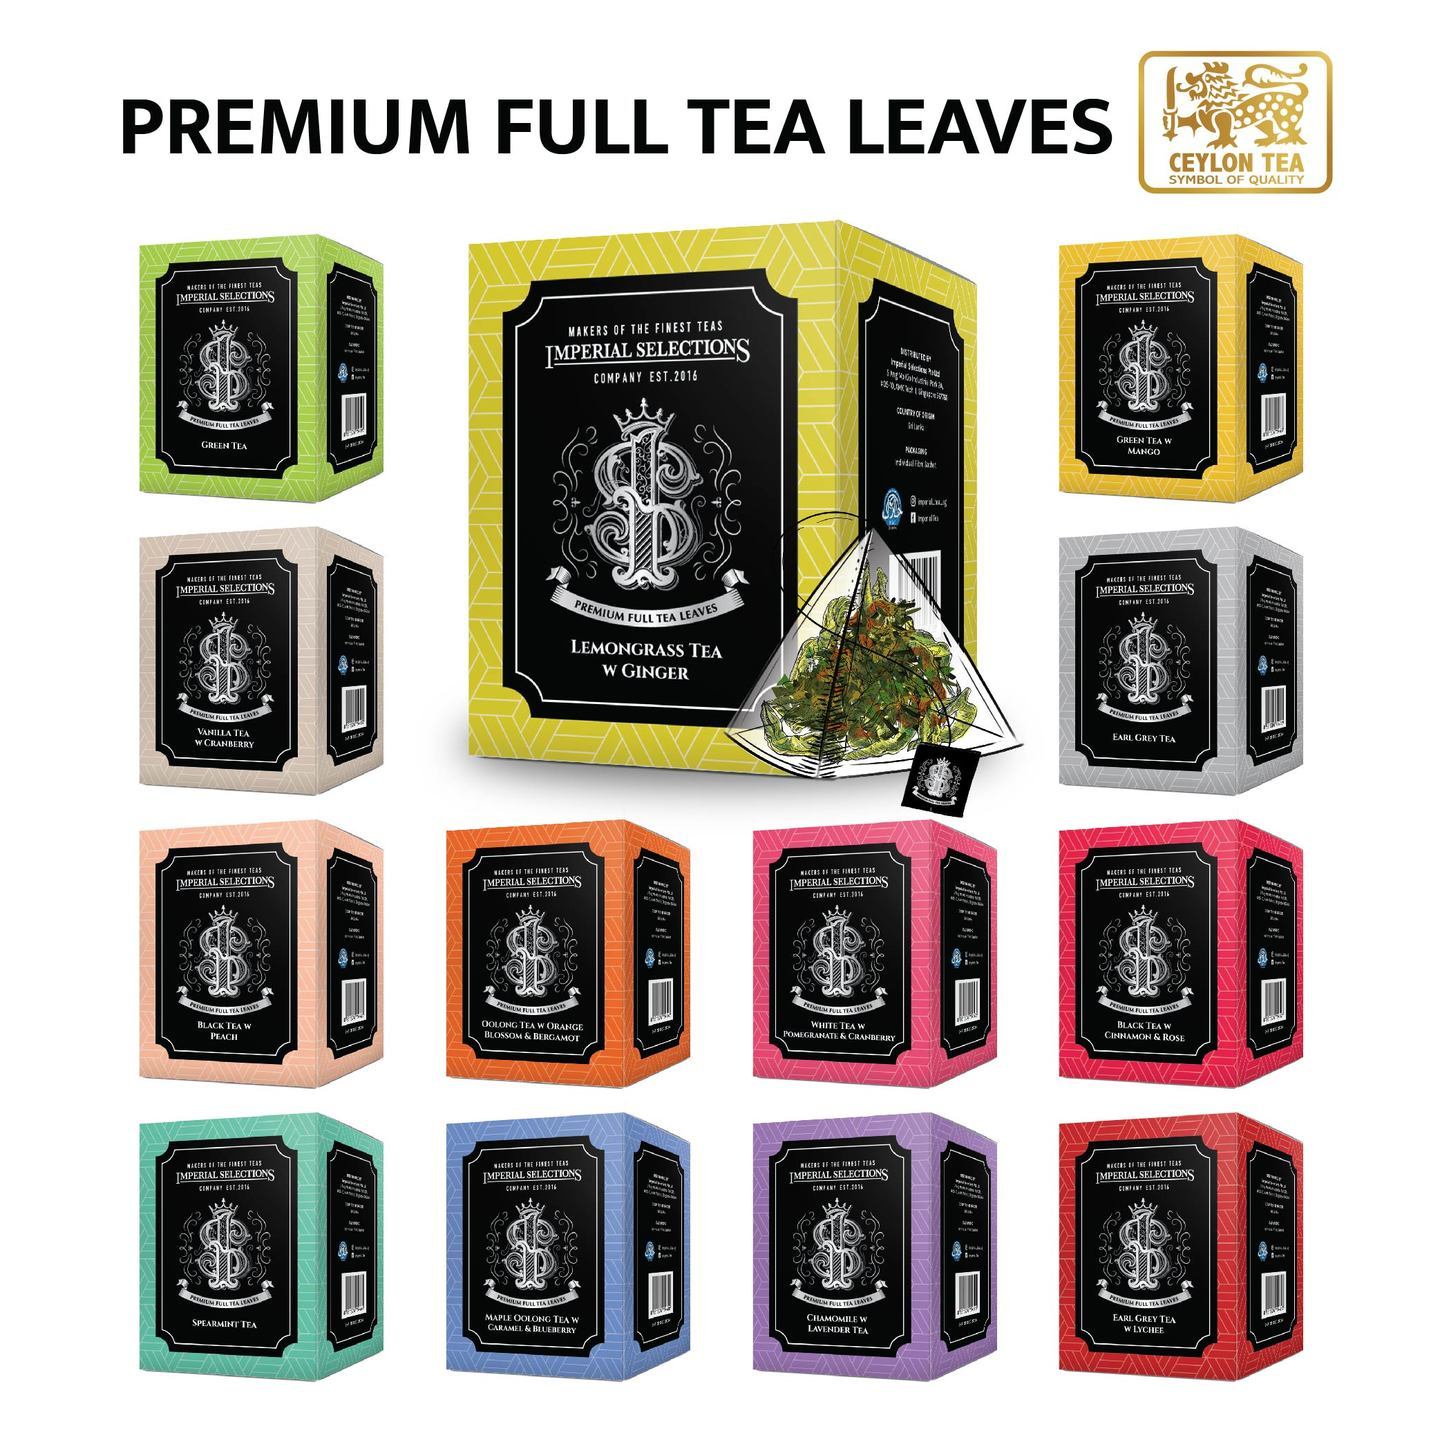 NEW Earl Grey, Chamomile, Lemongrass, Spearmint, Vanilla, Oolong Tea, Green Tea, Black Tea, White Tea